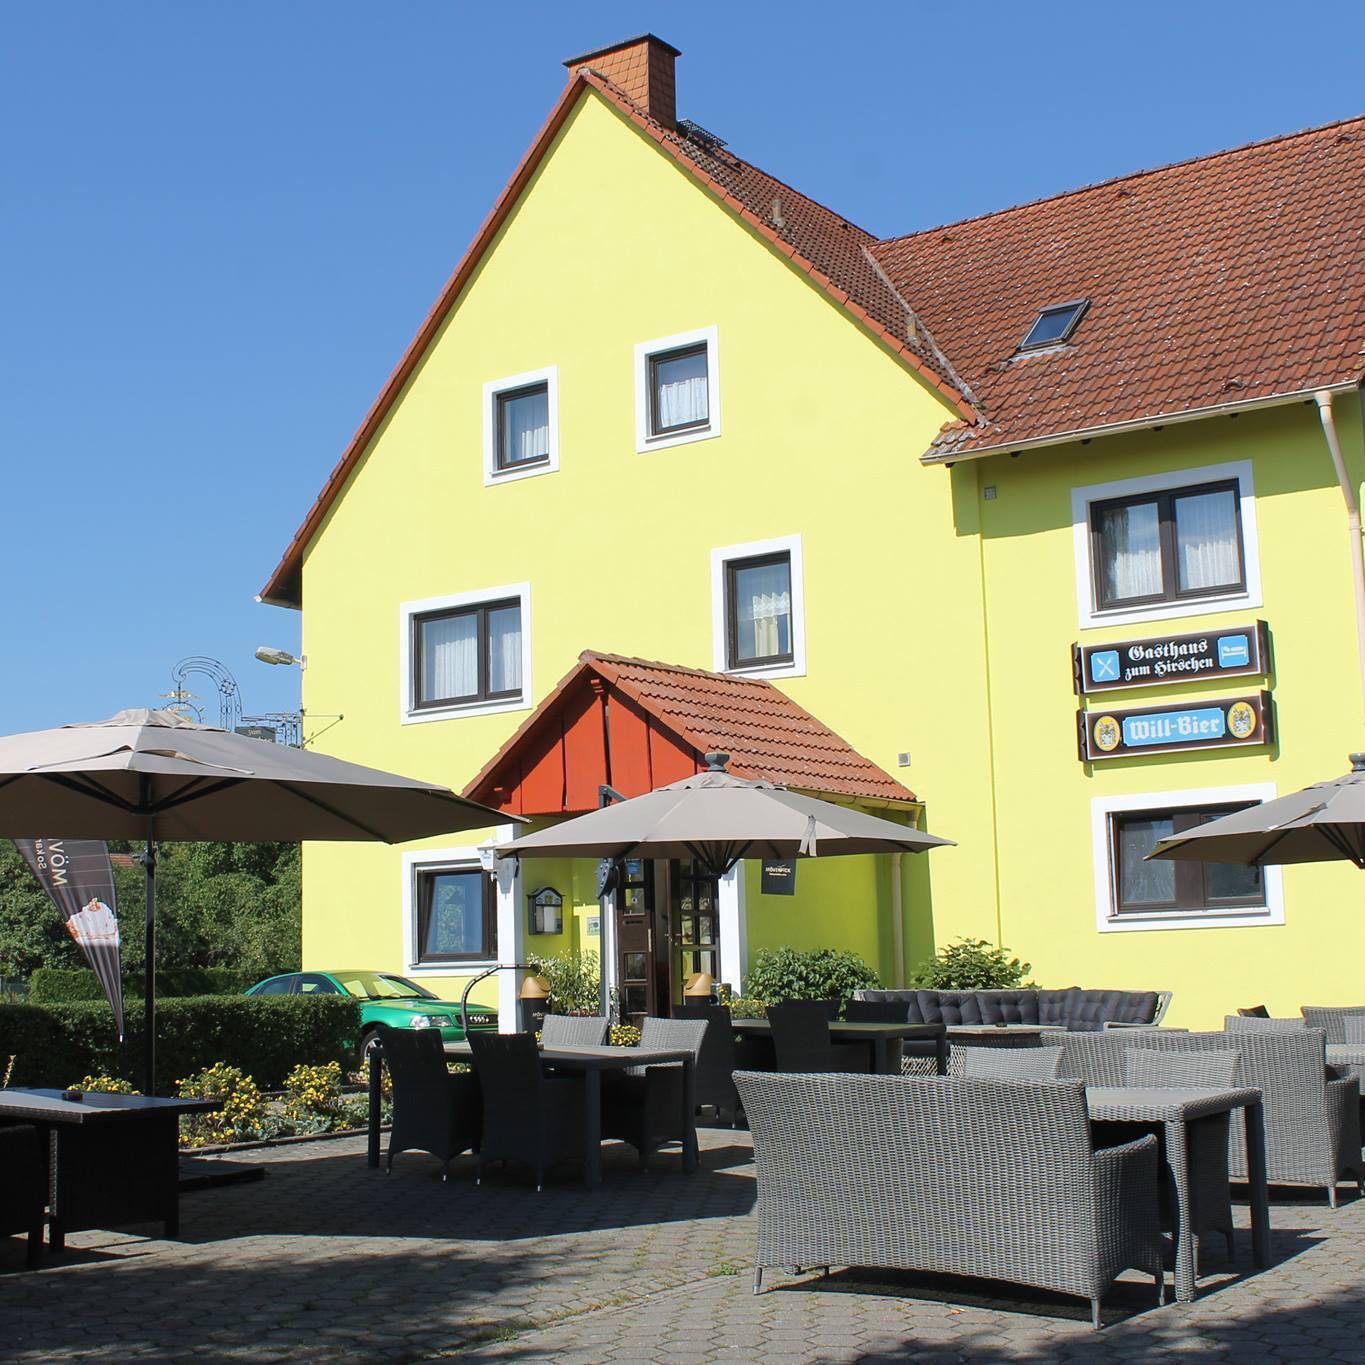 Restaurant "Pension zum Hirschen" in Oerlenbach